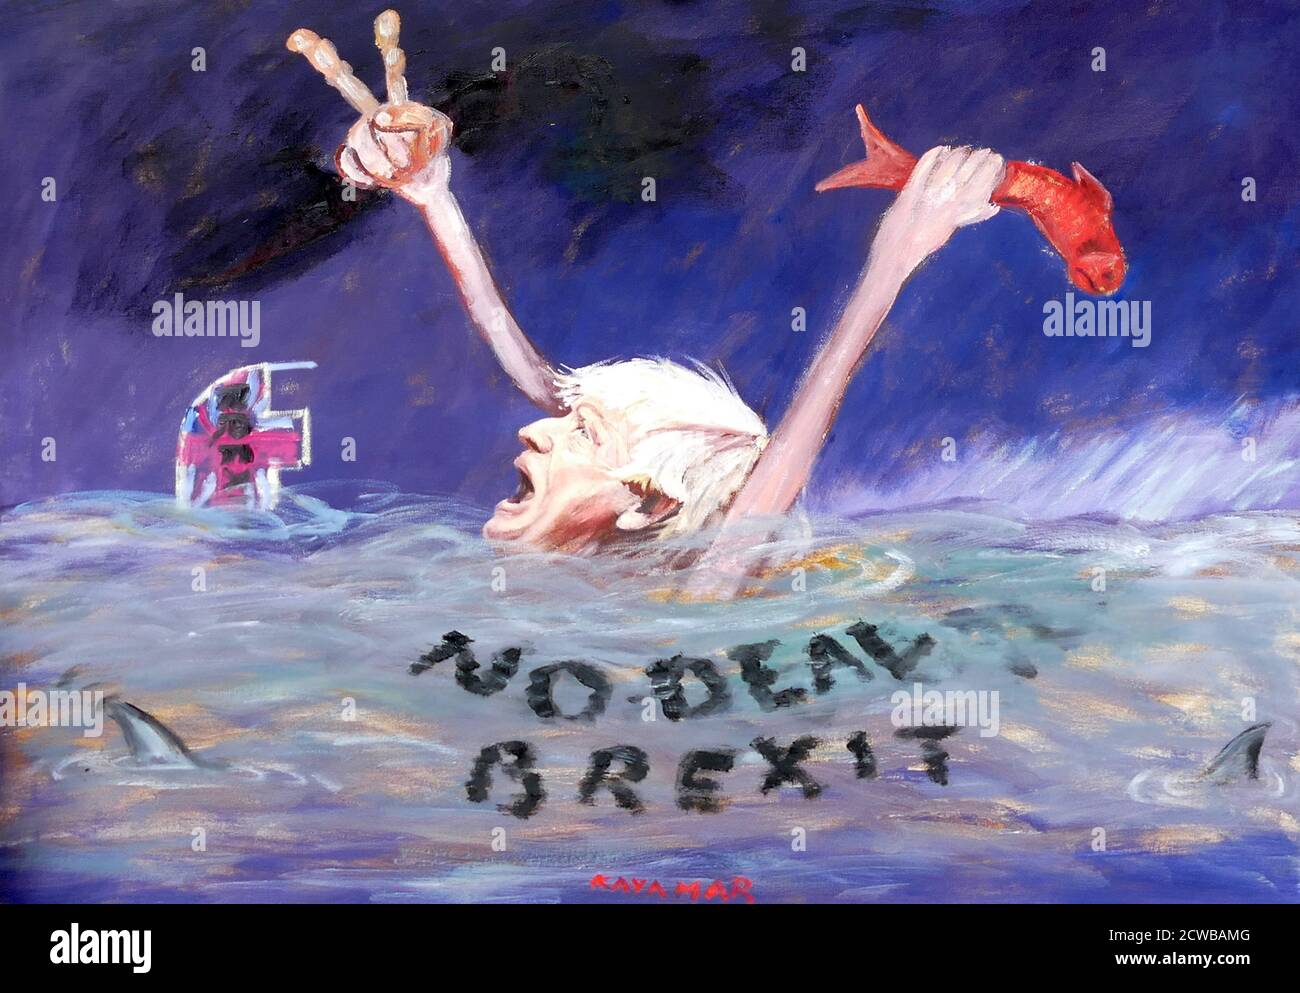 Satirisches Gemälde von Boris Johnson, der im Meer des 'No Deal Brexit' ertrinkt. Gemalt von Kaya Mar, September 2019 Stockfoto